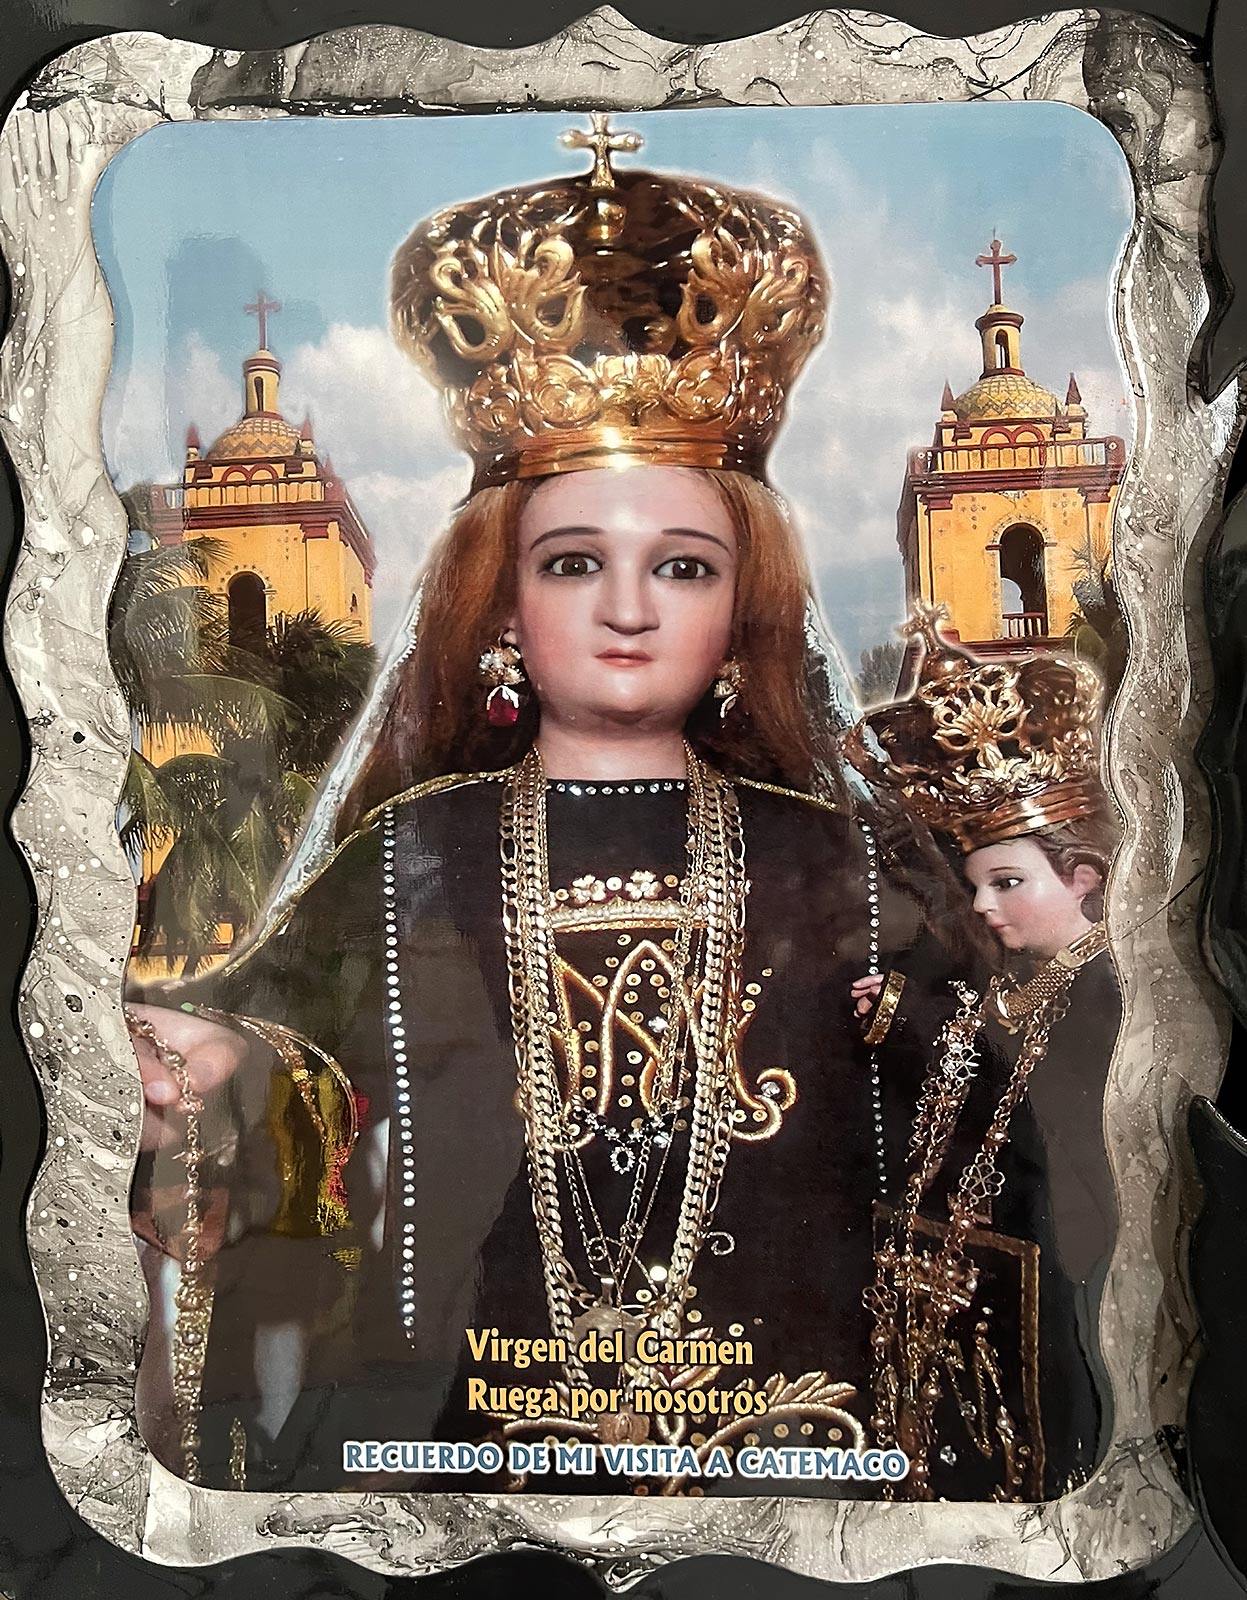 Pintura de la estatua milagrosa de María sosteniendo al niño Jesús, Santuario de Nuestra Señora del Carmen, Catemaco